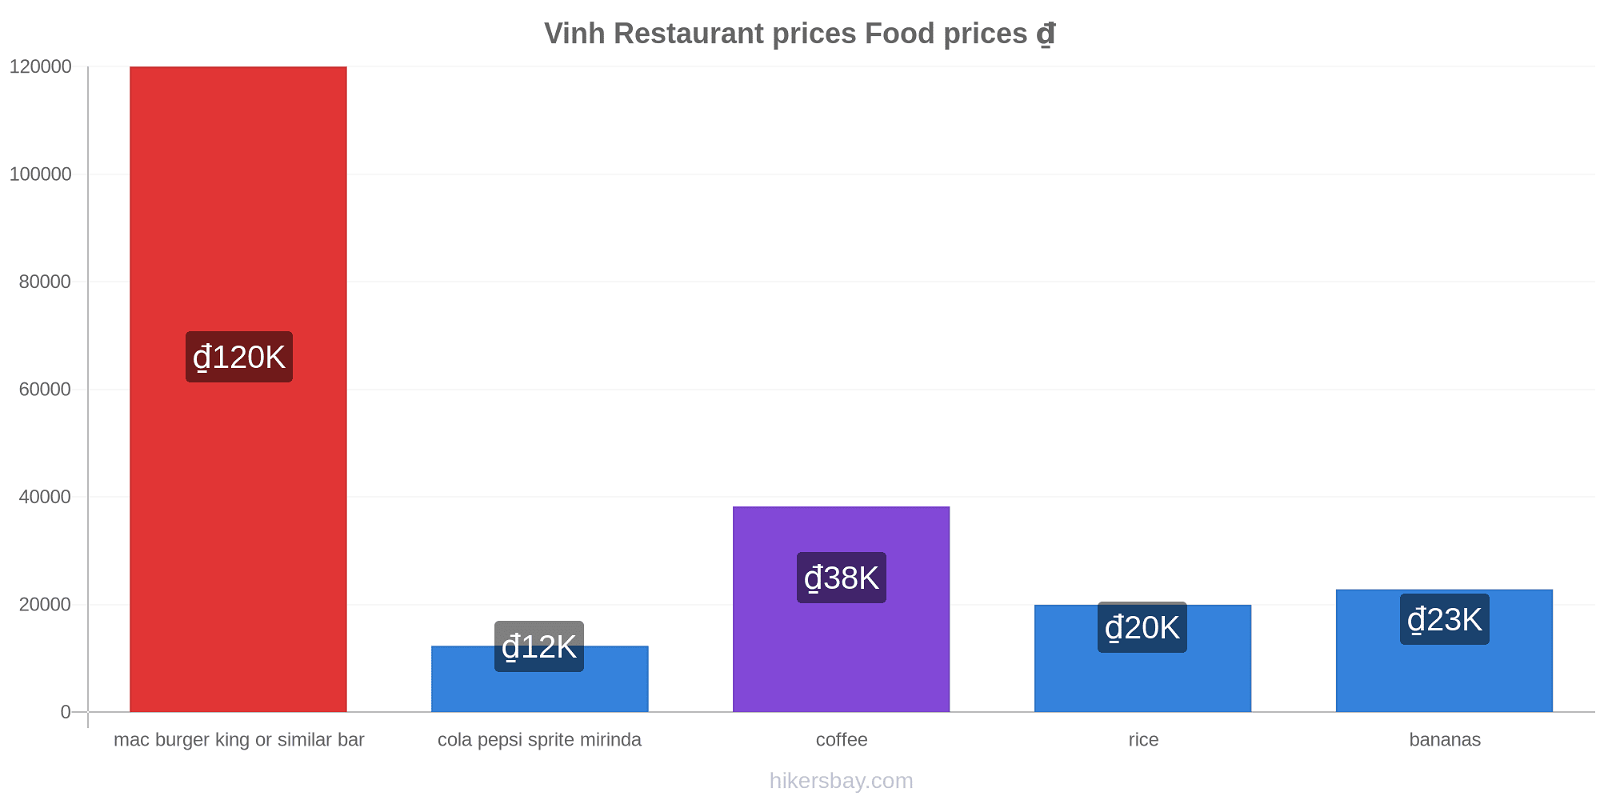 Vinh price changes hikersbay.com